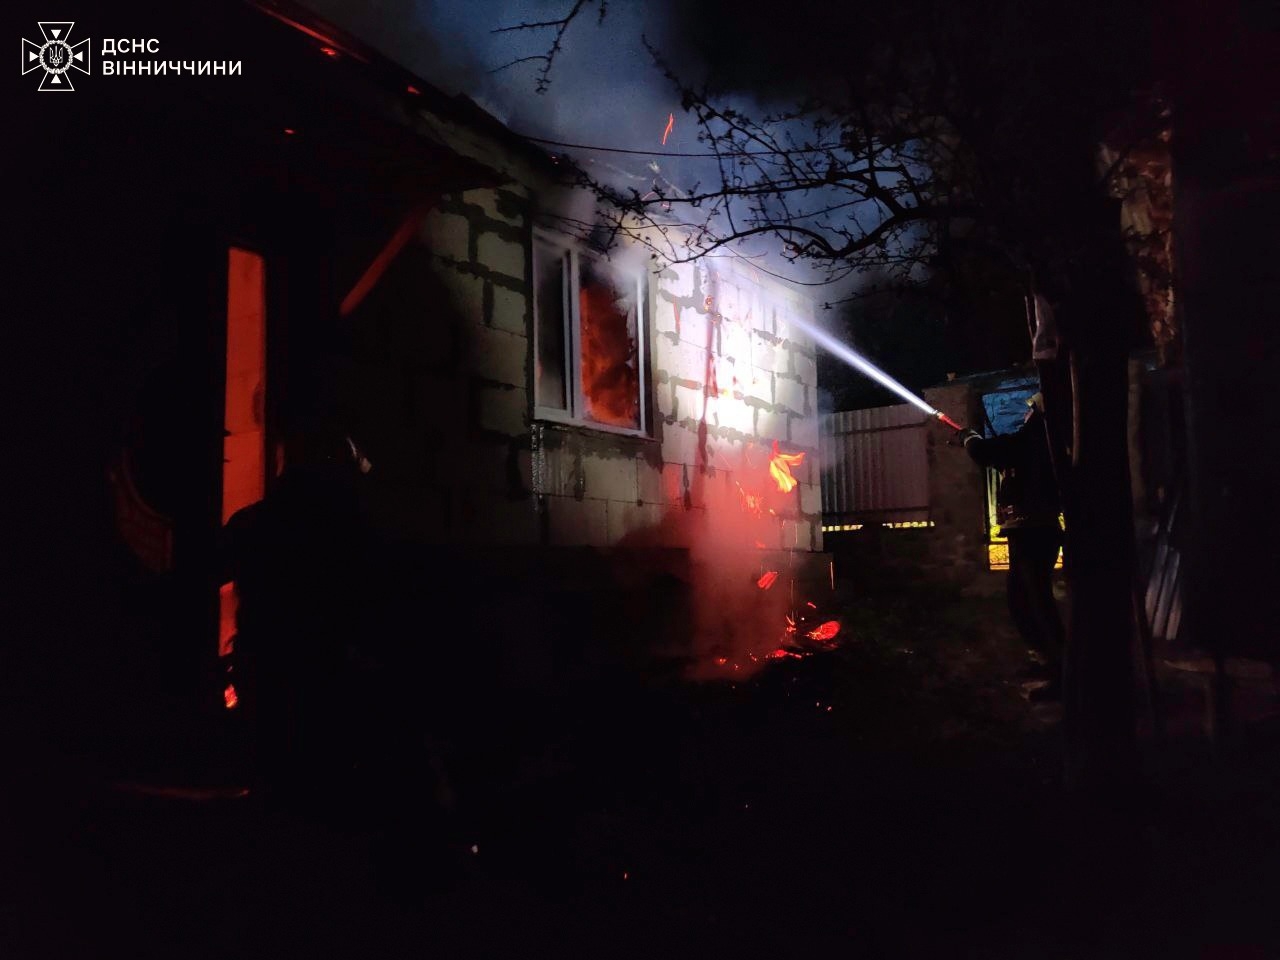 Під час пожежі в приватному будинку у Жмеринці постраждав чоловік